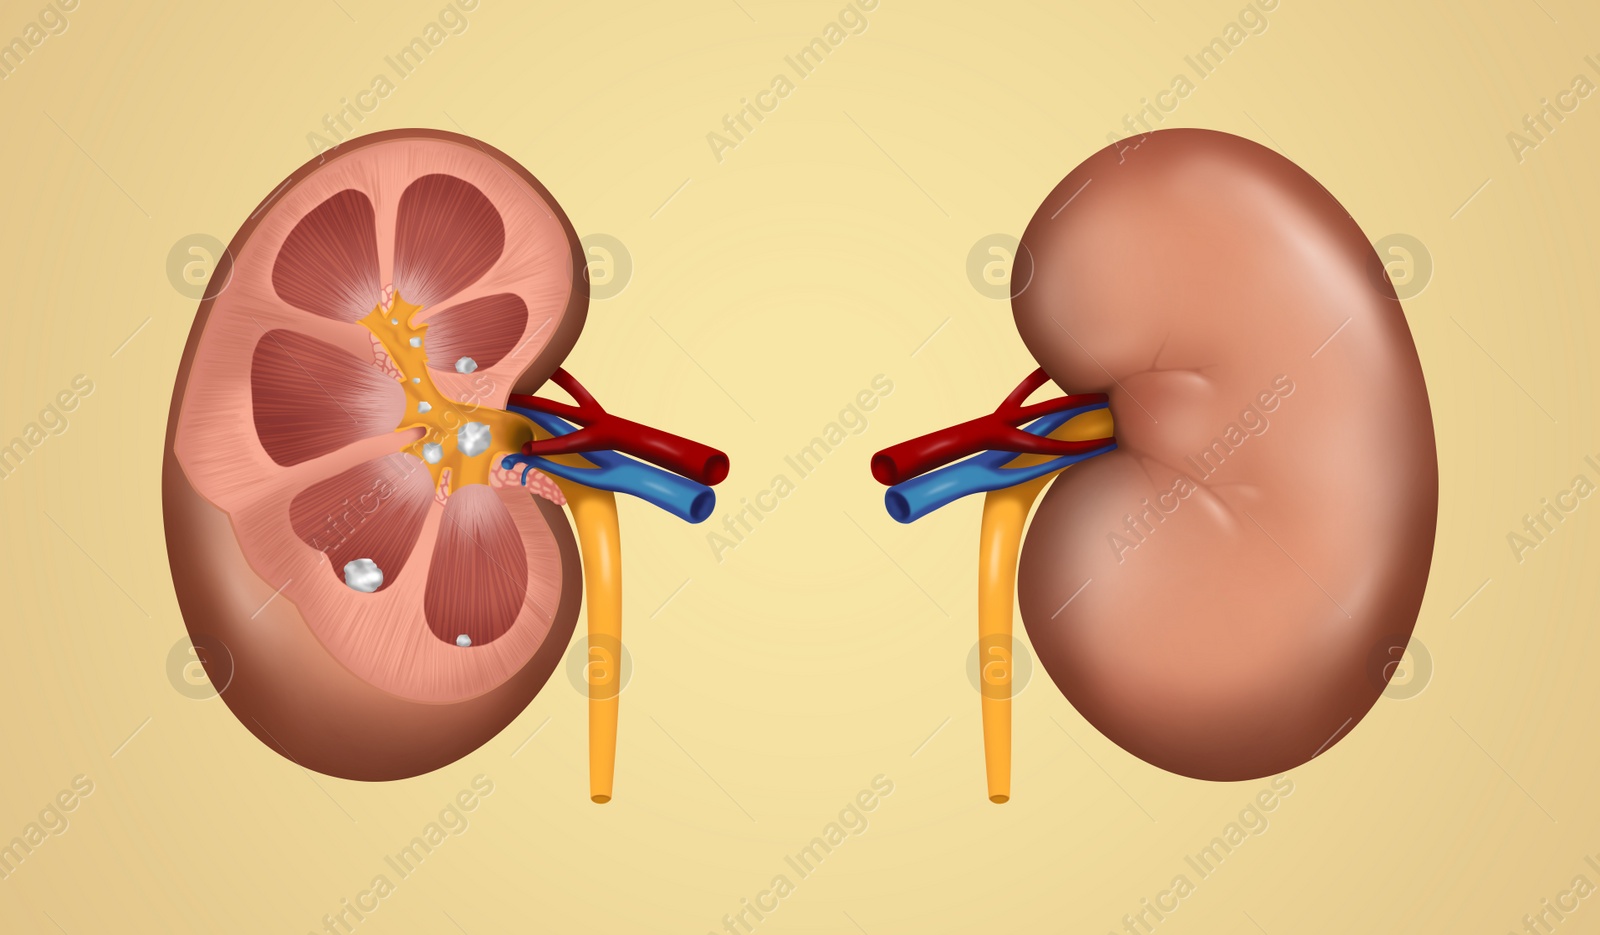 Illustration of  human kidney stones on beige background. Banner design